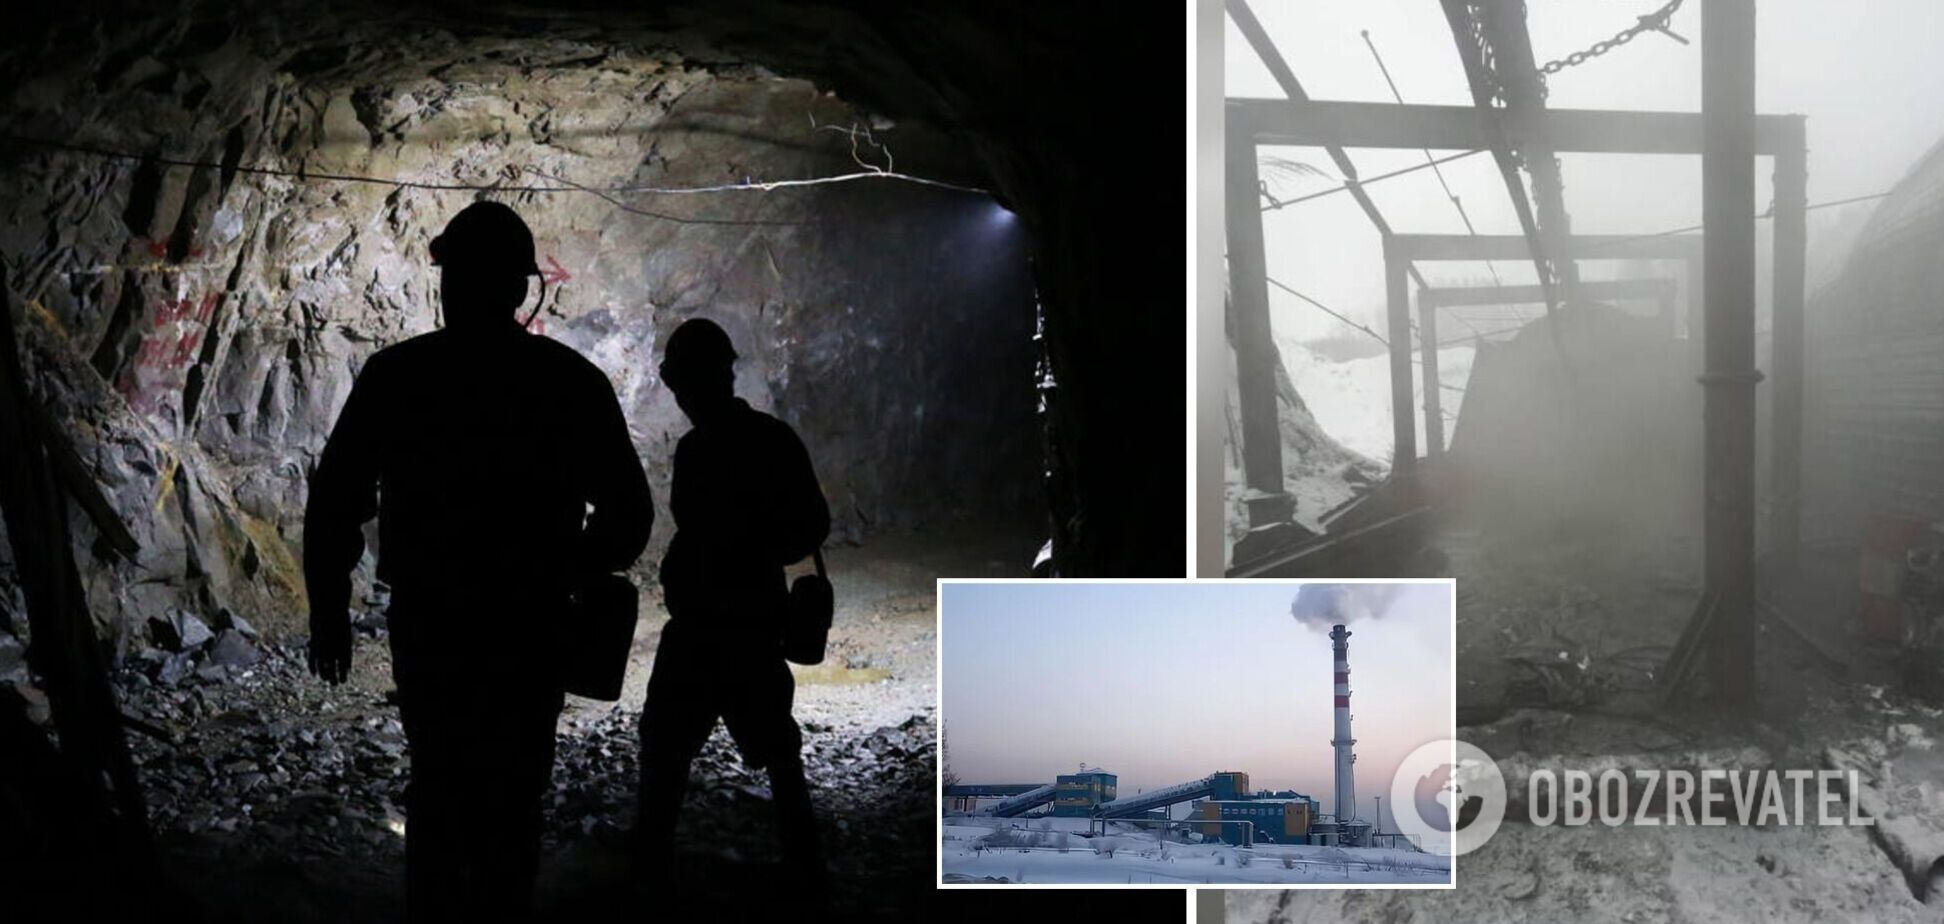 Количество погибших из-за взрыва на шахте в России возросло до 51 человека. Фото, видео и все подробности